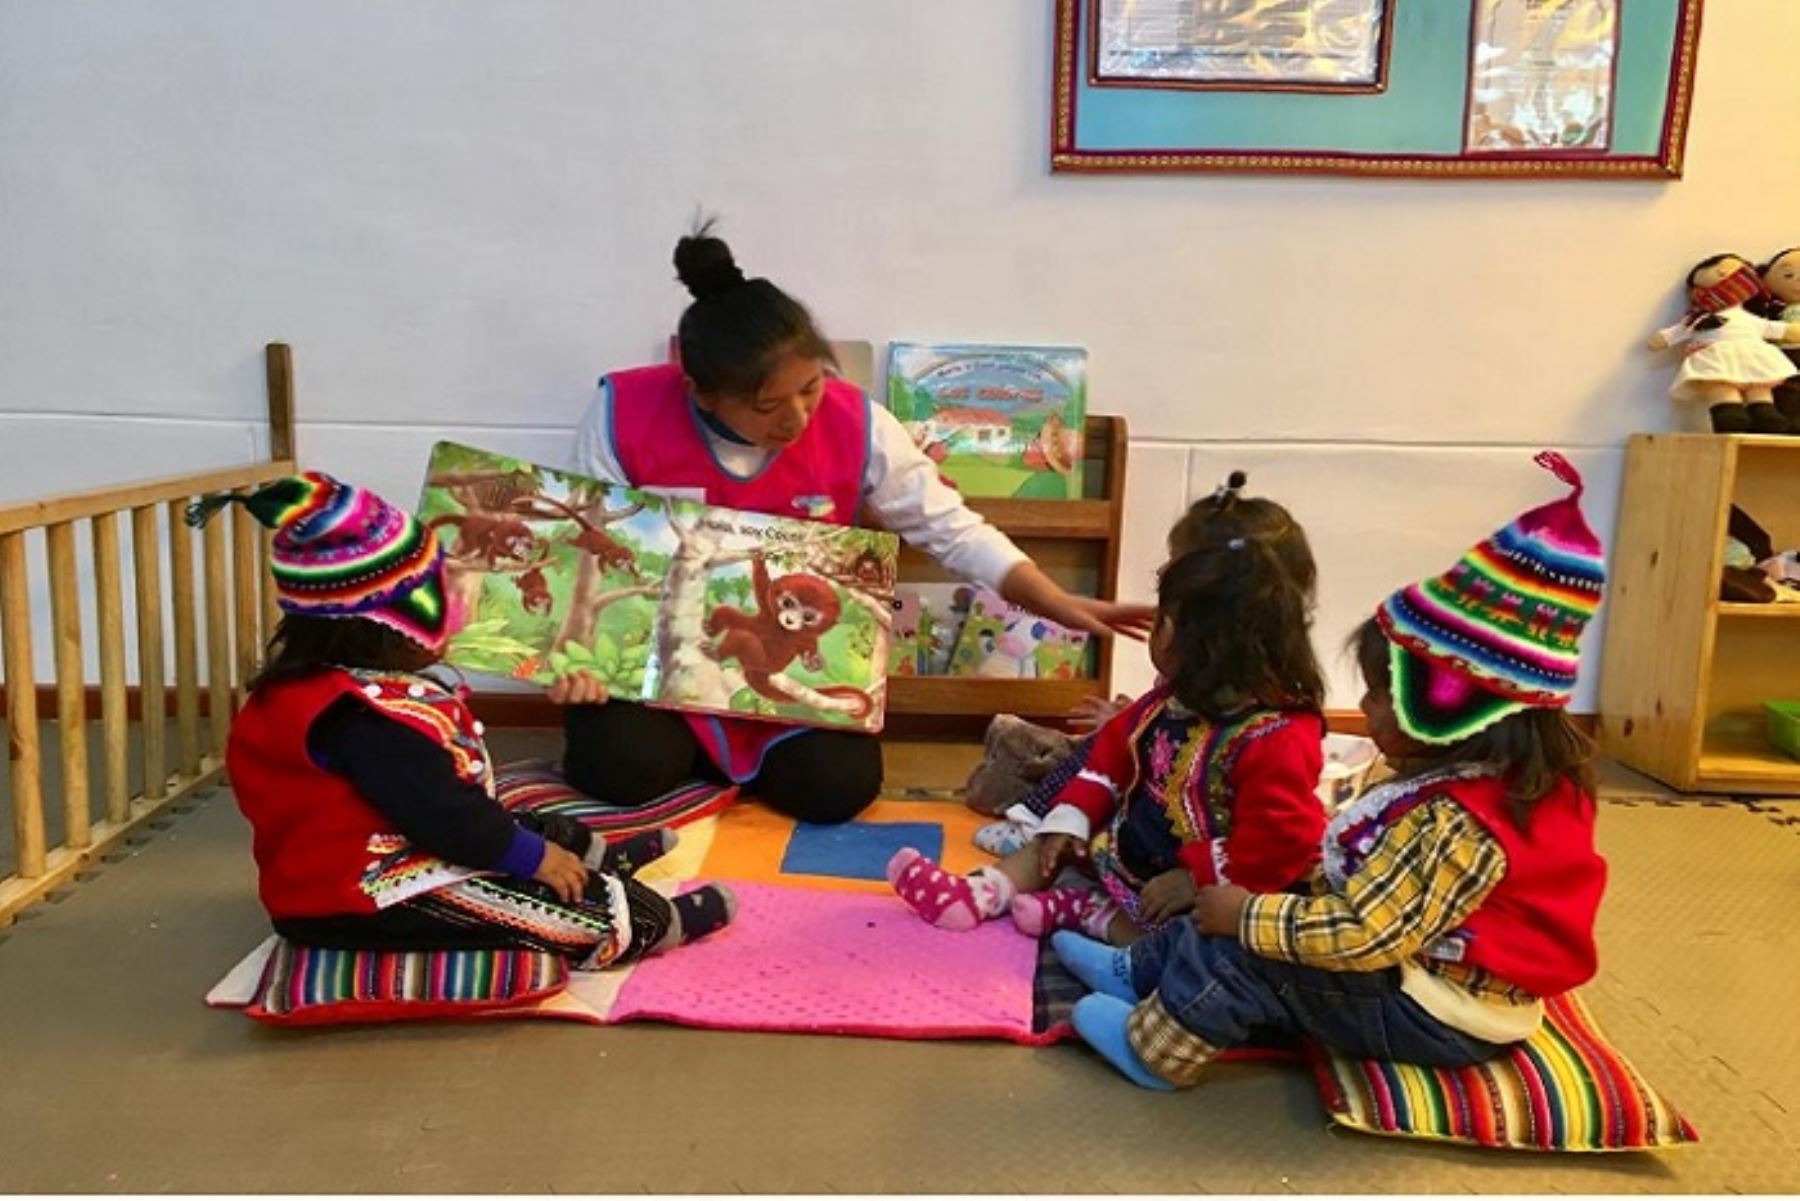 La directora ejecutiva de Cuna Más, Fanny Montellanos, inauguró el Centro Infantil de Atención Integral (Ciai) “Niño sagrado”, ubicado en la comunidad de Sillacancha del distrito de Calca, en Cusco.